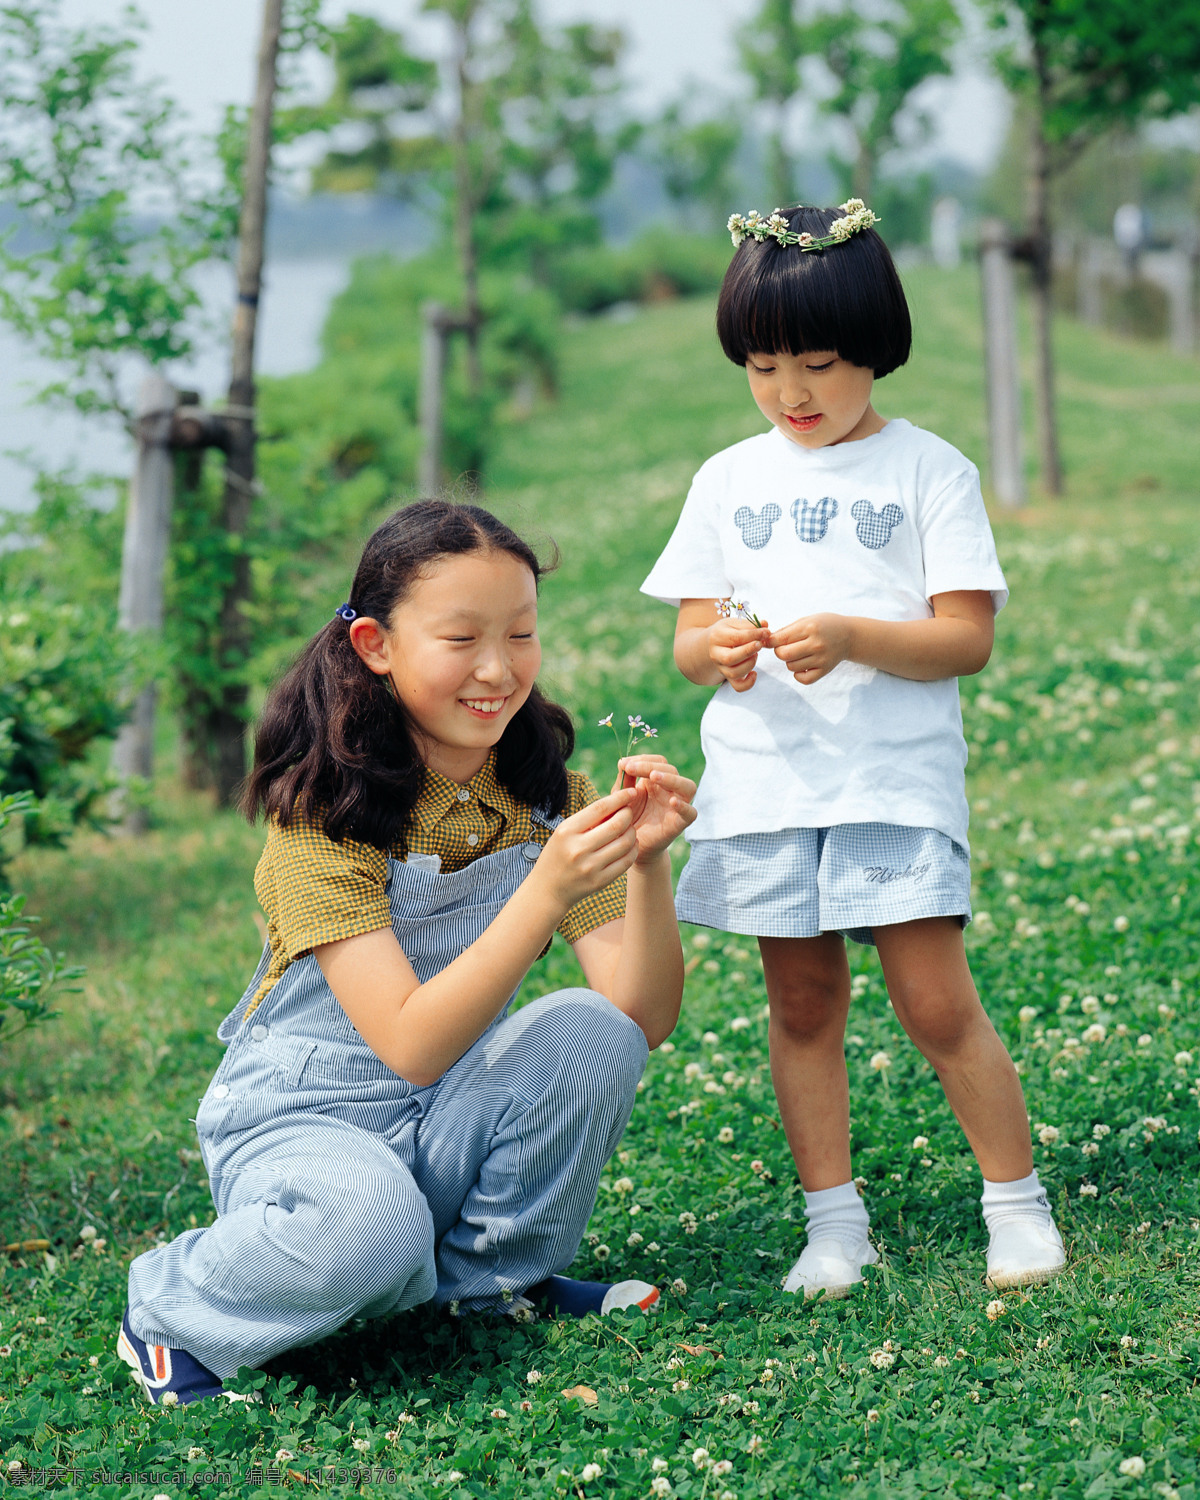 高清晰儿童 人物动作姿势 采花的小女孩 草地 绿色 叶子等 人物图库 儿童幼儿 摄影图库